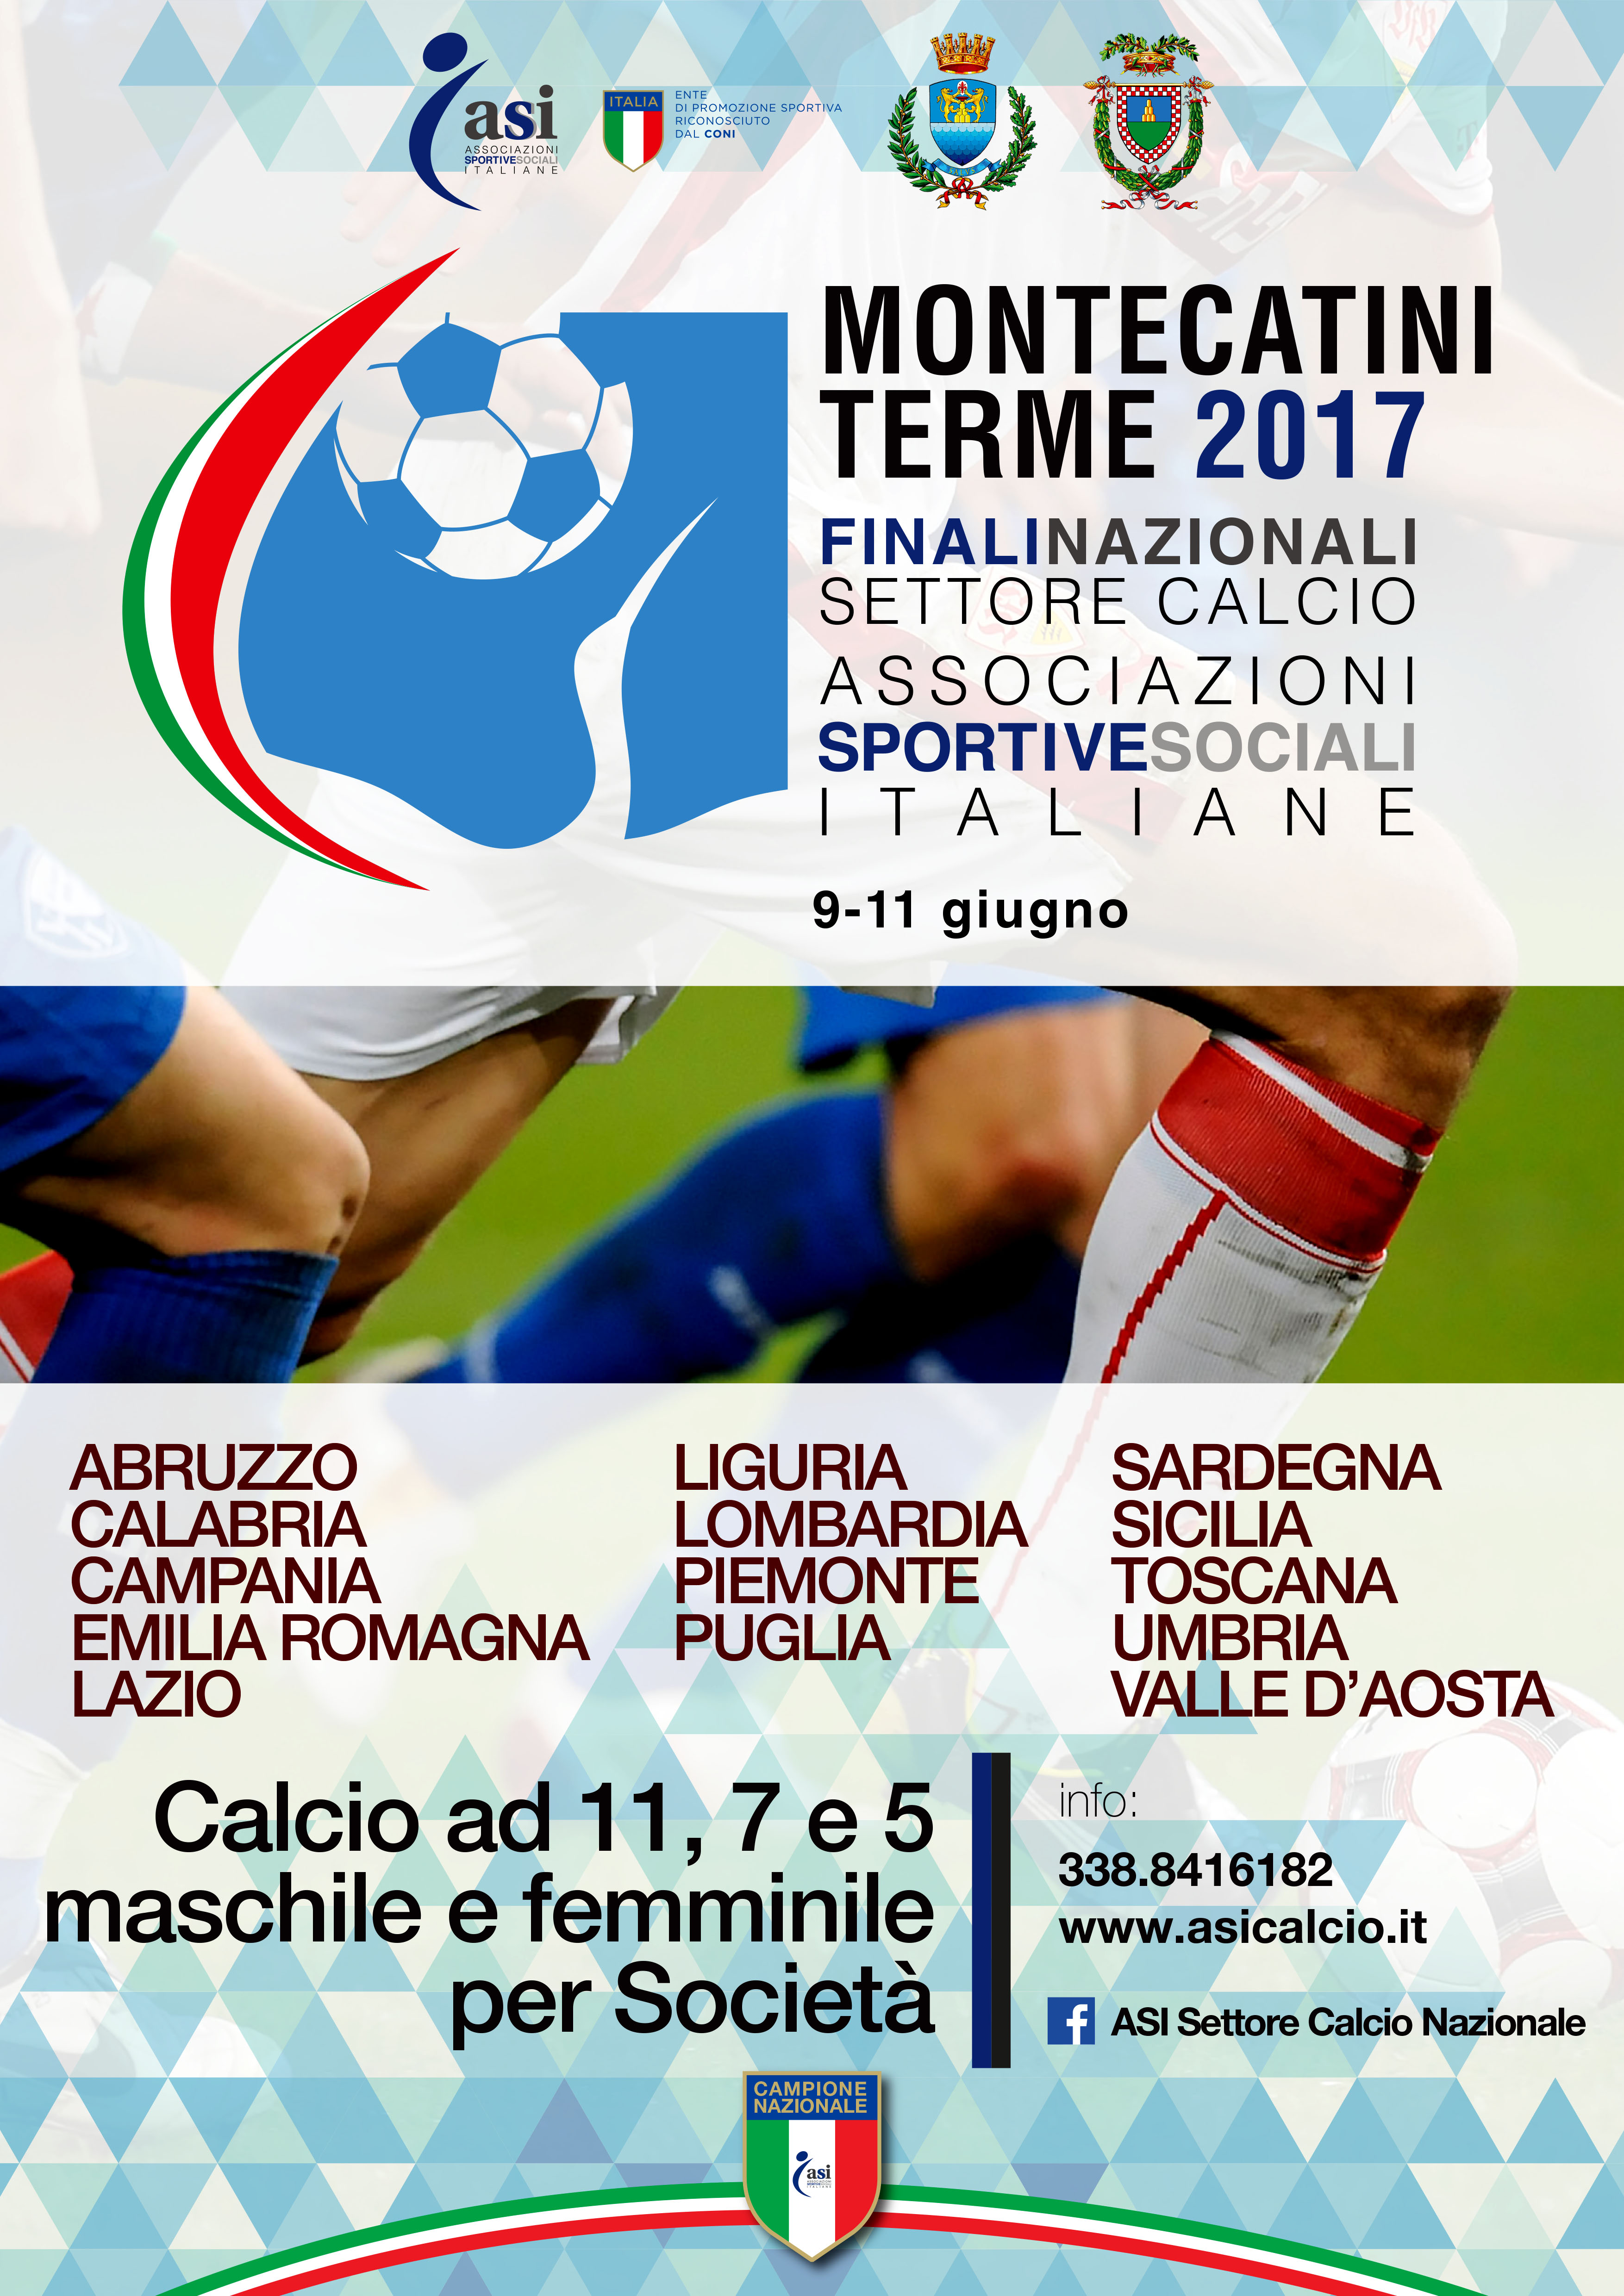 Le Finali Nazionali del Settore Calcio Asi a Montecatini Terme 